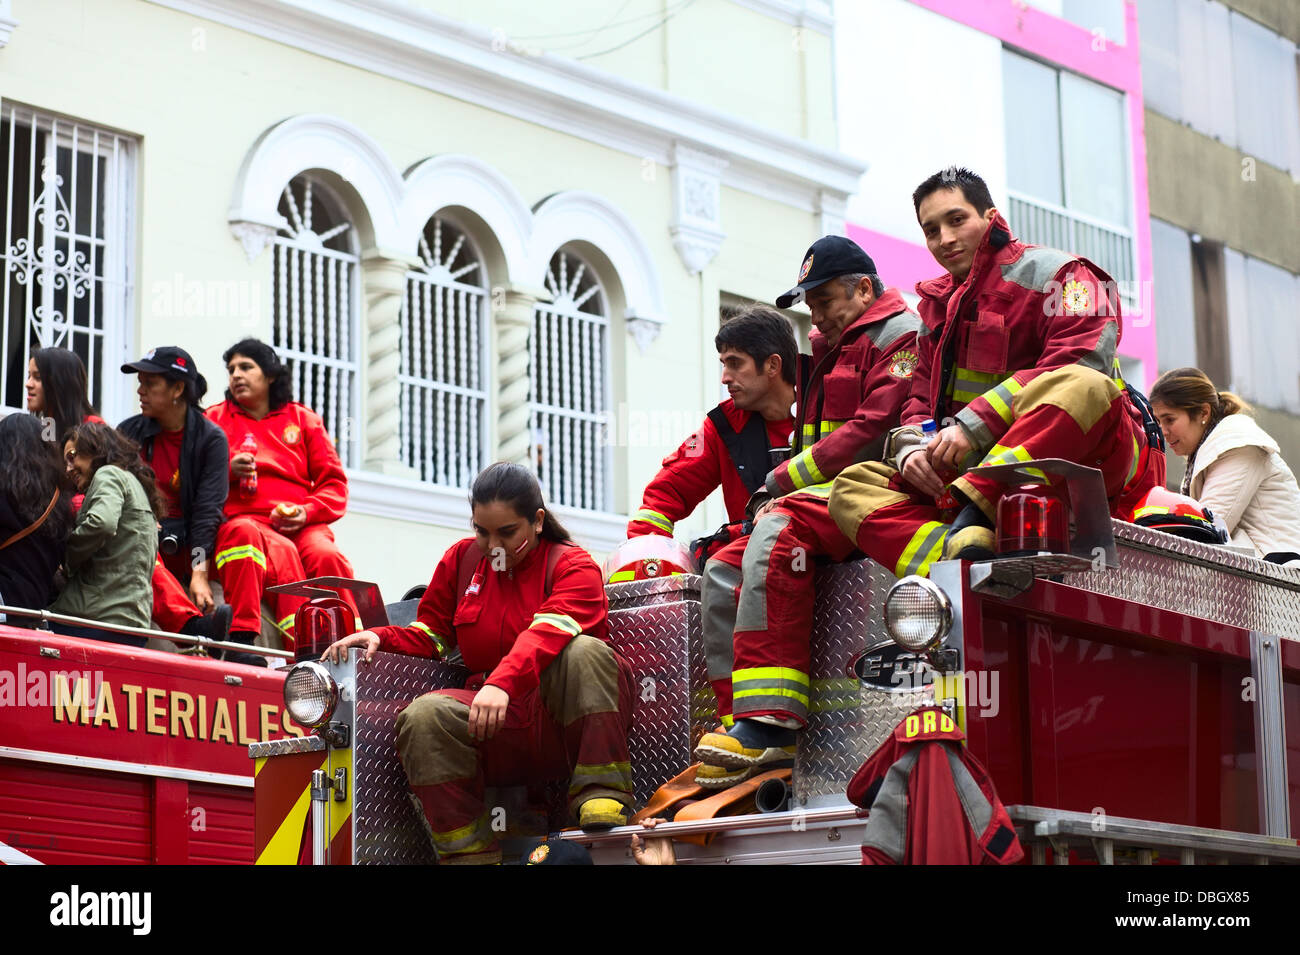 Vigili del fuoco volontari seduti su un camion dei pompieri sul Wong parata del 21 luglio 2013 nel quartiere di Miraflores, Lima, Perù. Foto Stock